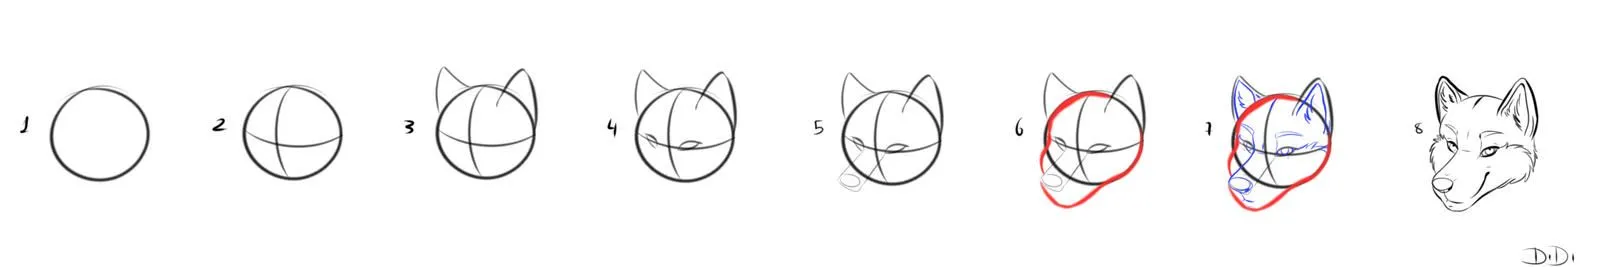 Como dibujar la cabeza de un lobo - Imagui